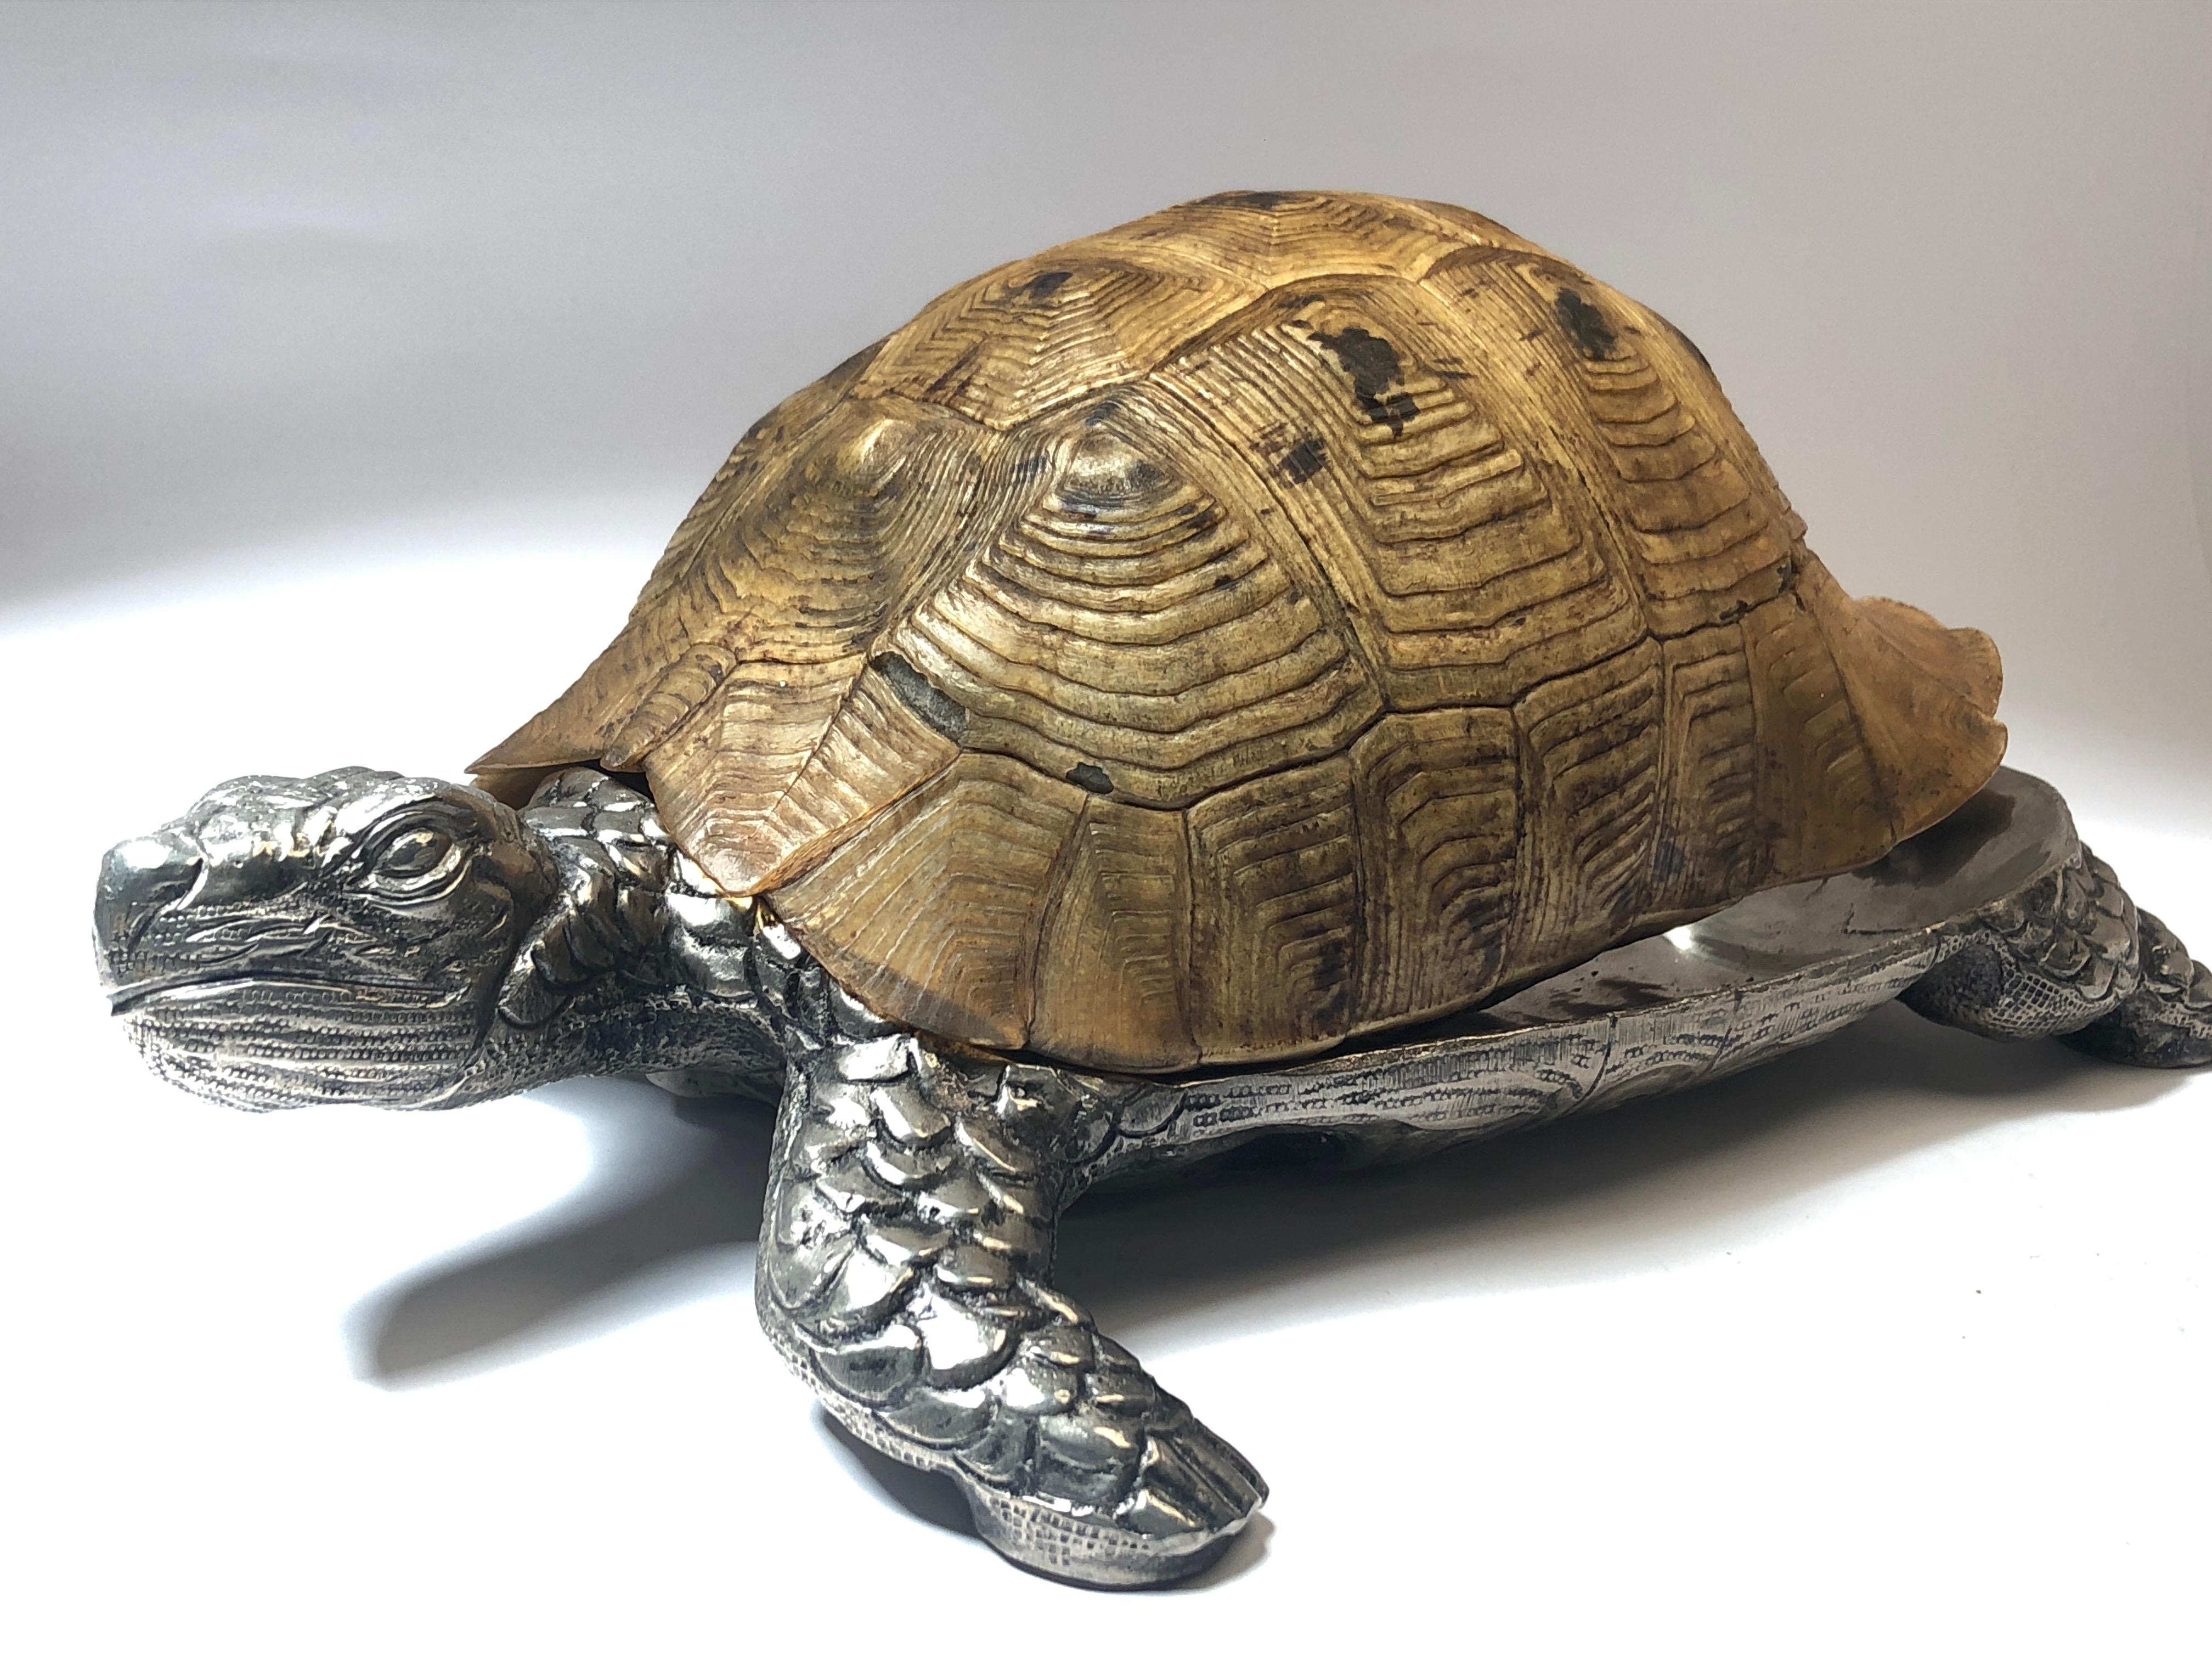 Seltene signierte Gabriella Crespi große echte Schildkrötenpanzer Box kombiniert mit Silber Skulptur.

1970er Jahre, hergestellt in Italien. 

Dieses Stück ist in fast ausgezeichnetem Zustand mit Alterungsspuren auf der Schale. Keine strukturellen